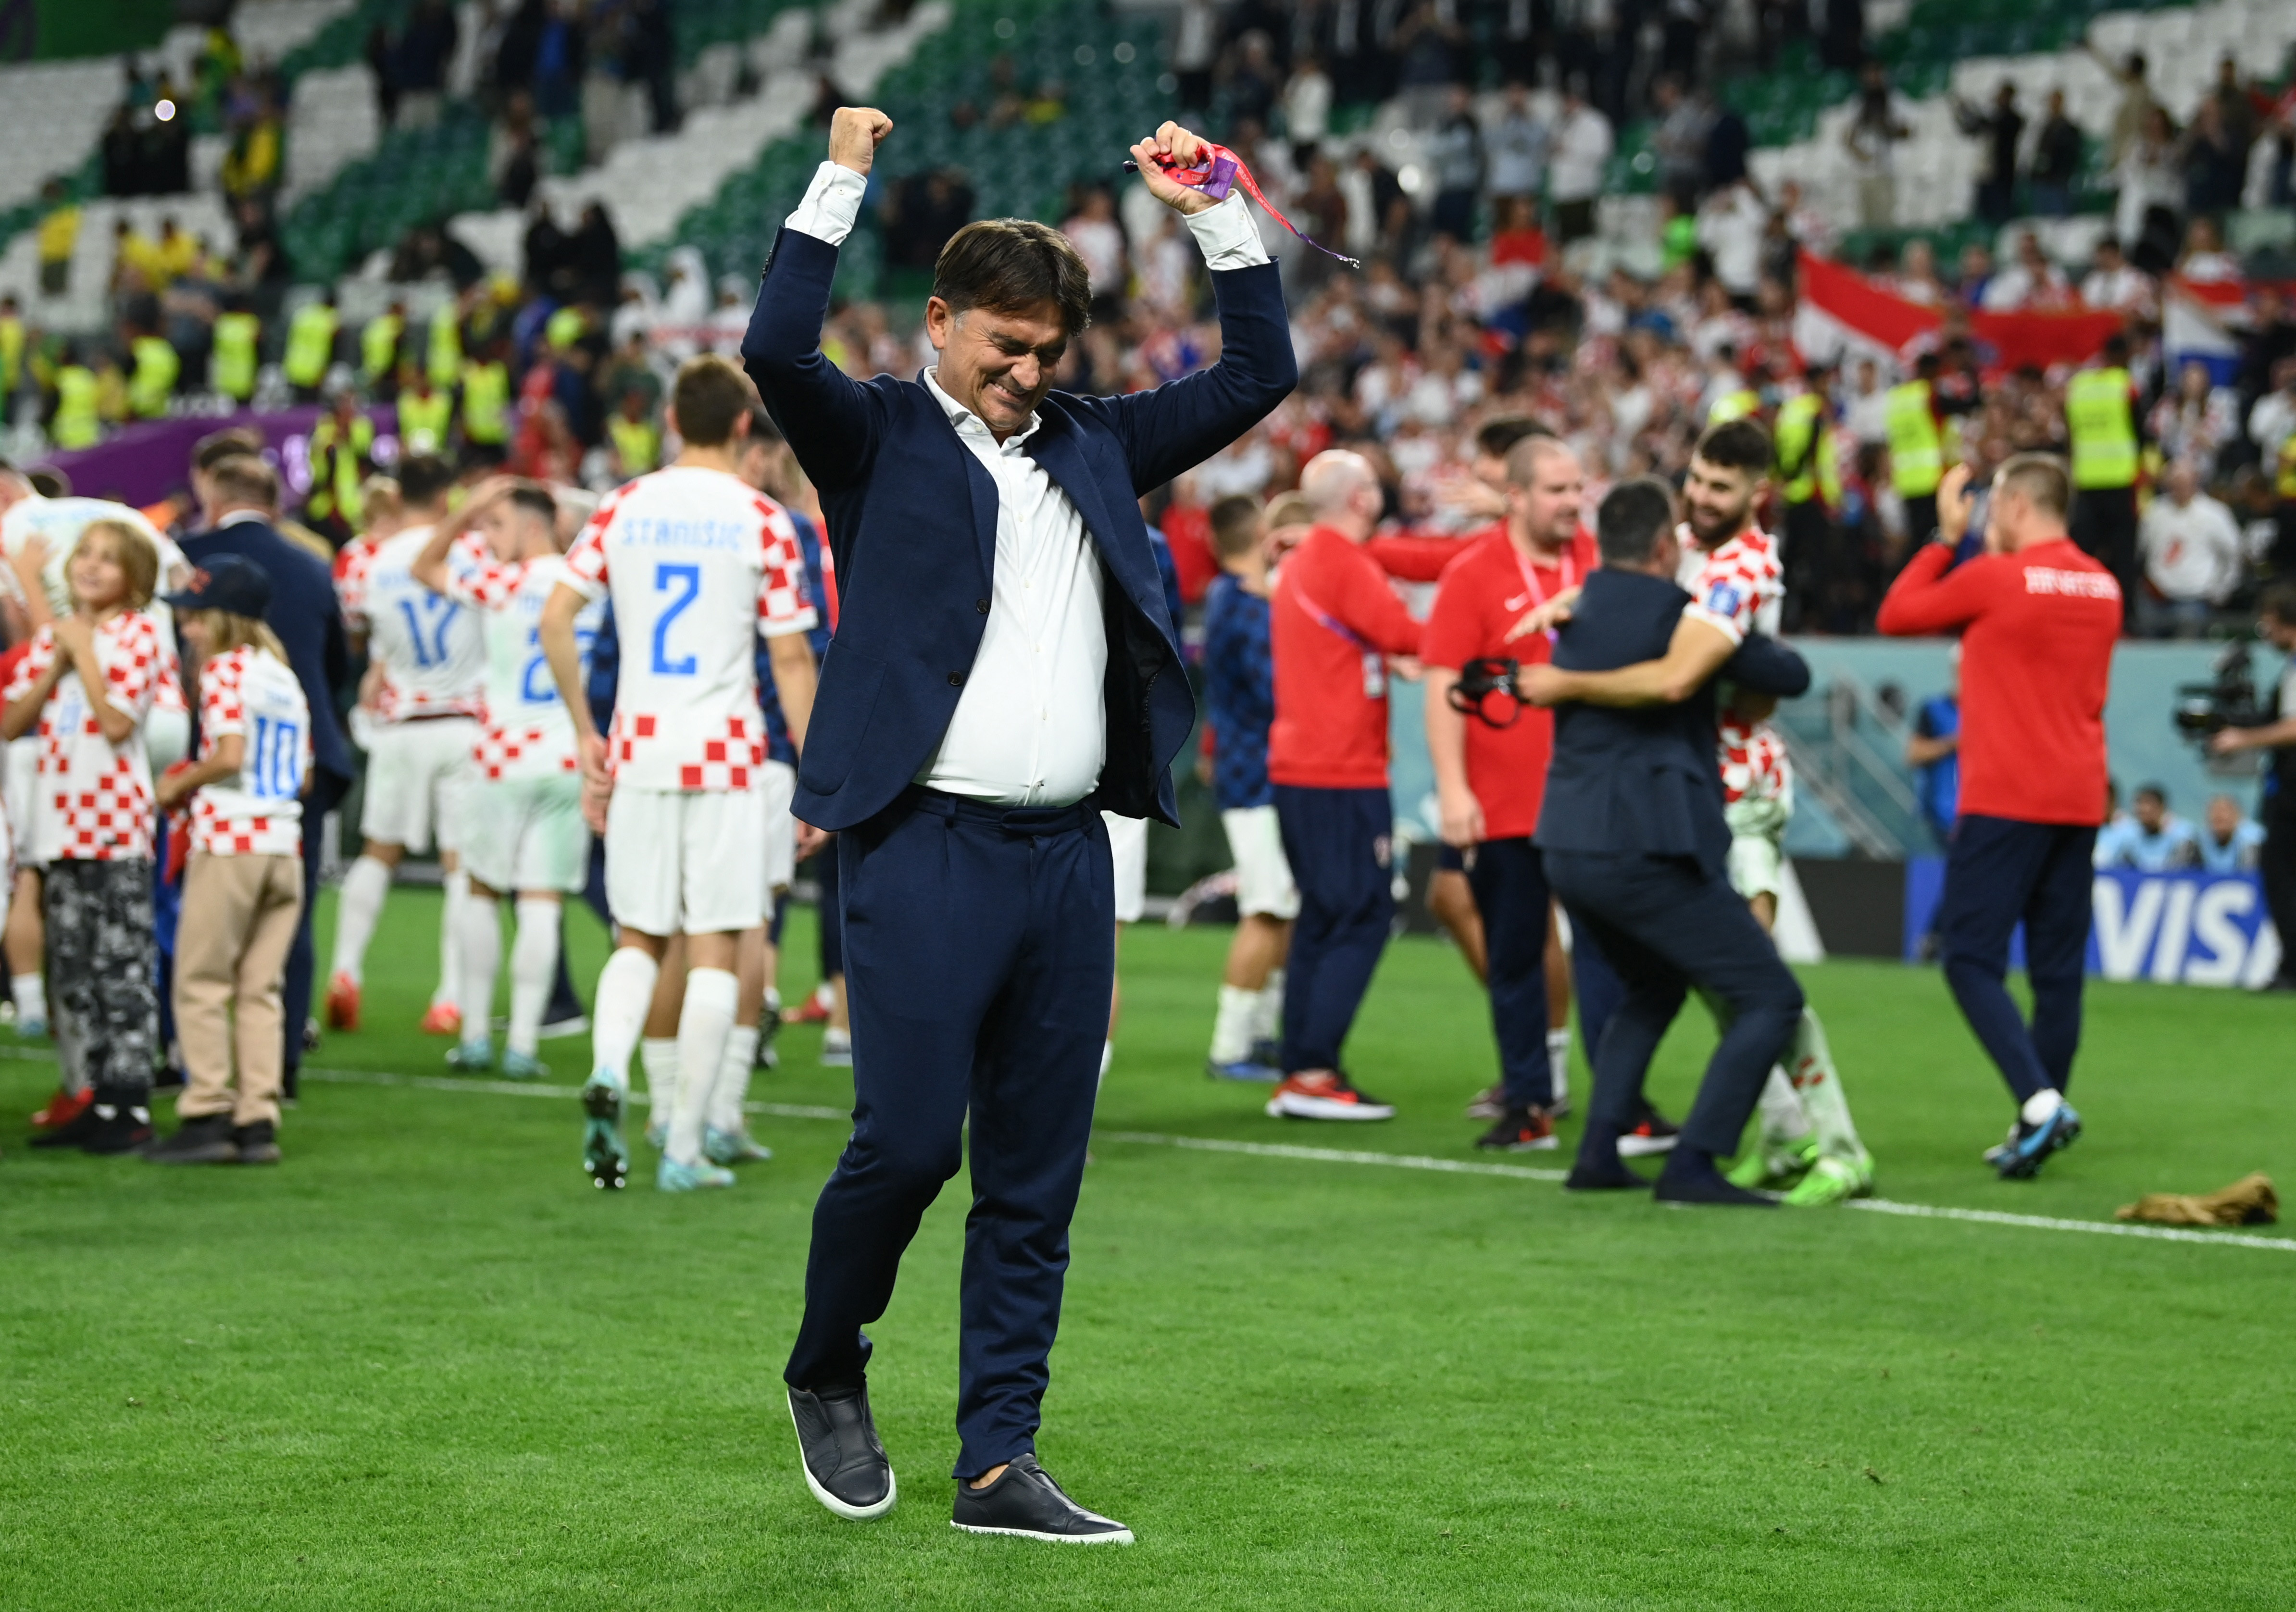 Croacia fue finalista en el Mundial de Rusia y espera repetirlo en la actual edición. En la final esperan Francia o Marruecos (REUTERS/Annegret Hilse)